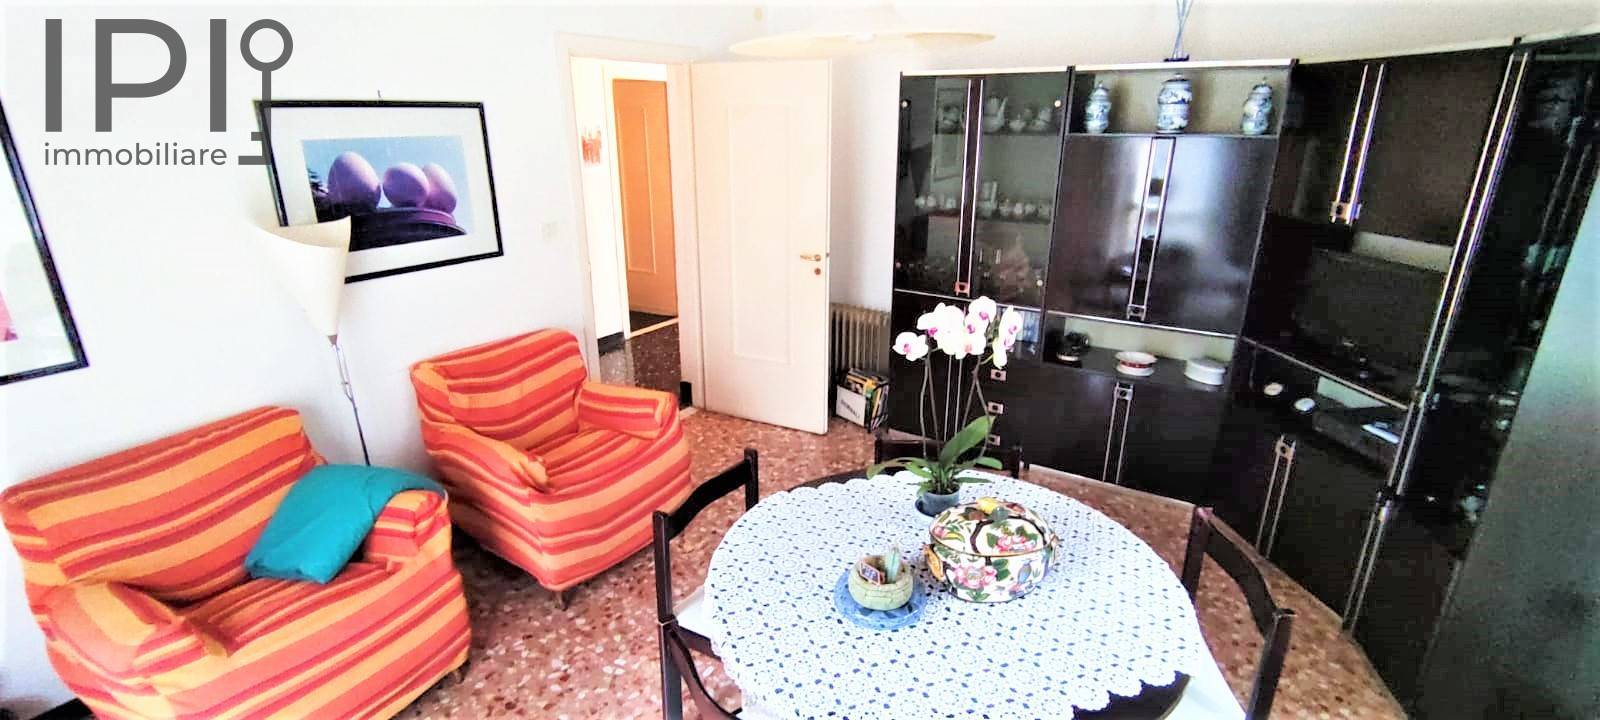 Appartamento in vendita a Cairo Montenotte, 4 locali, prezzo € 110.000 | PortaleAgenzieImmobiliari.it